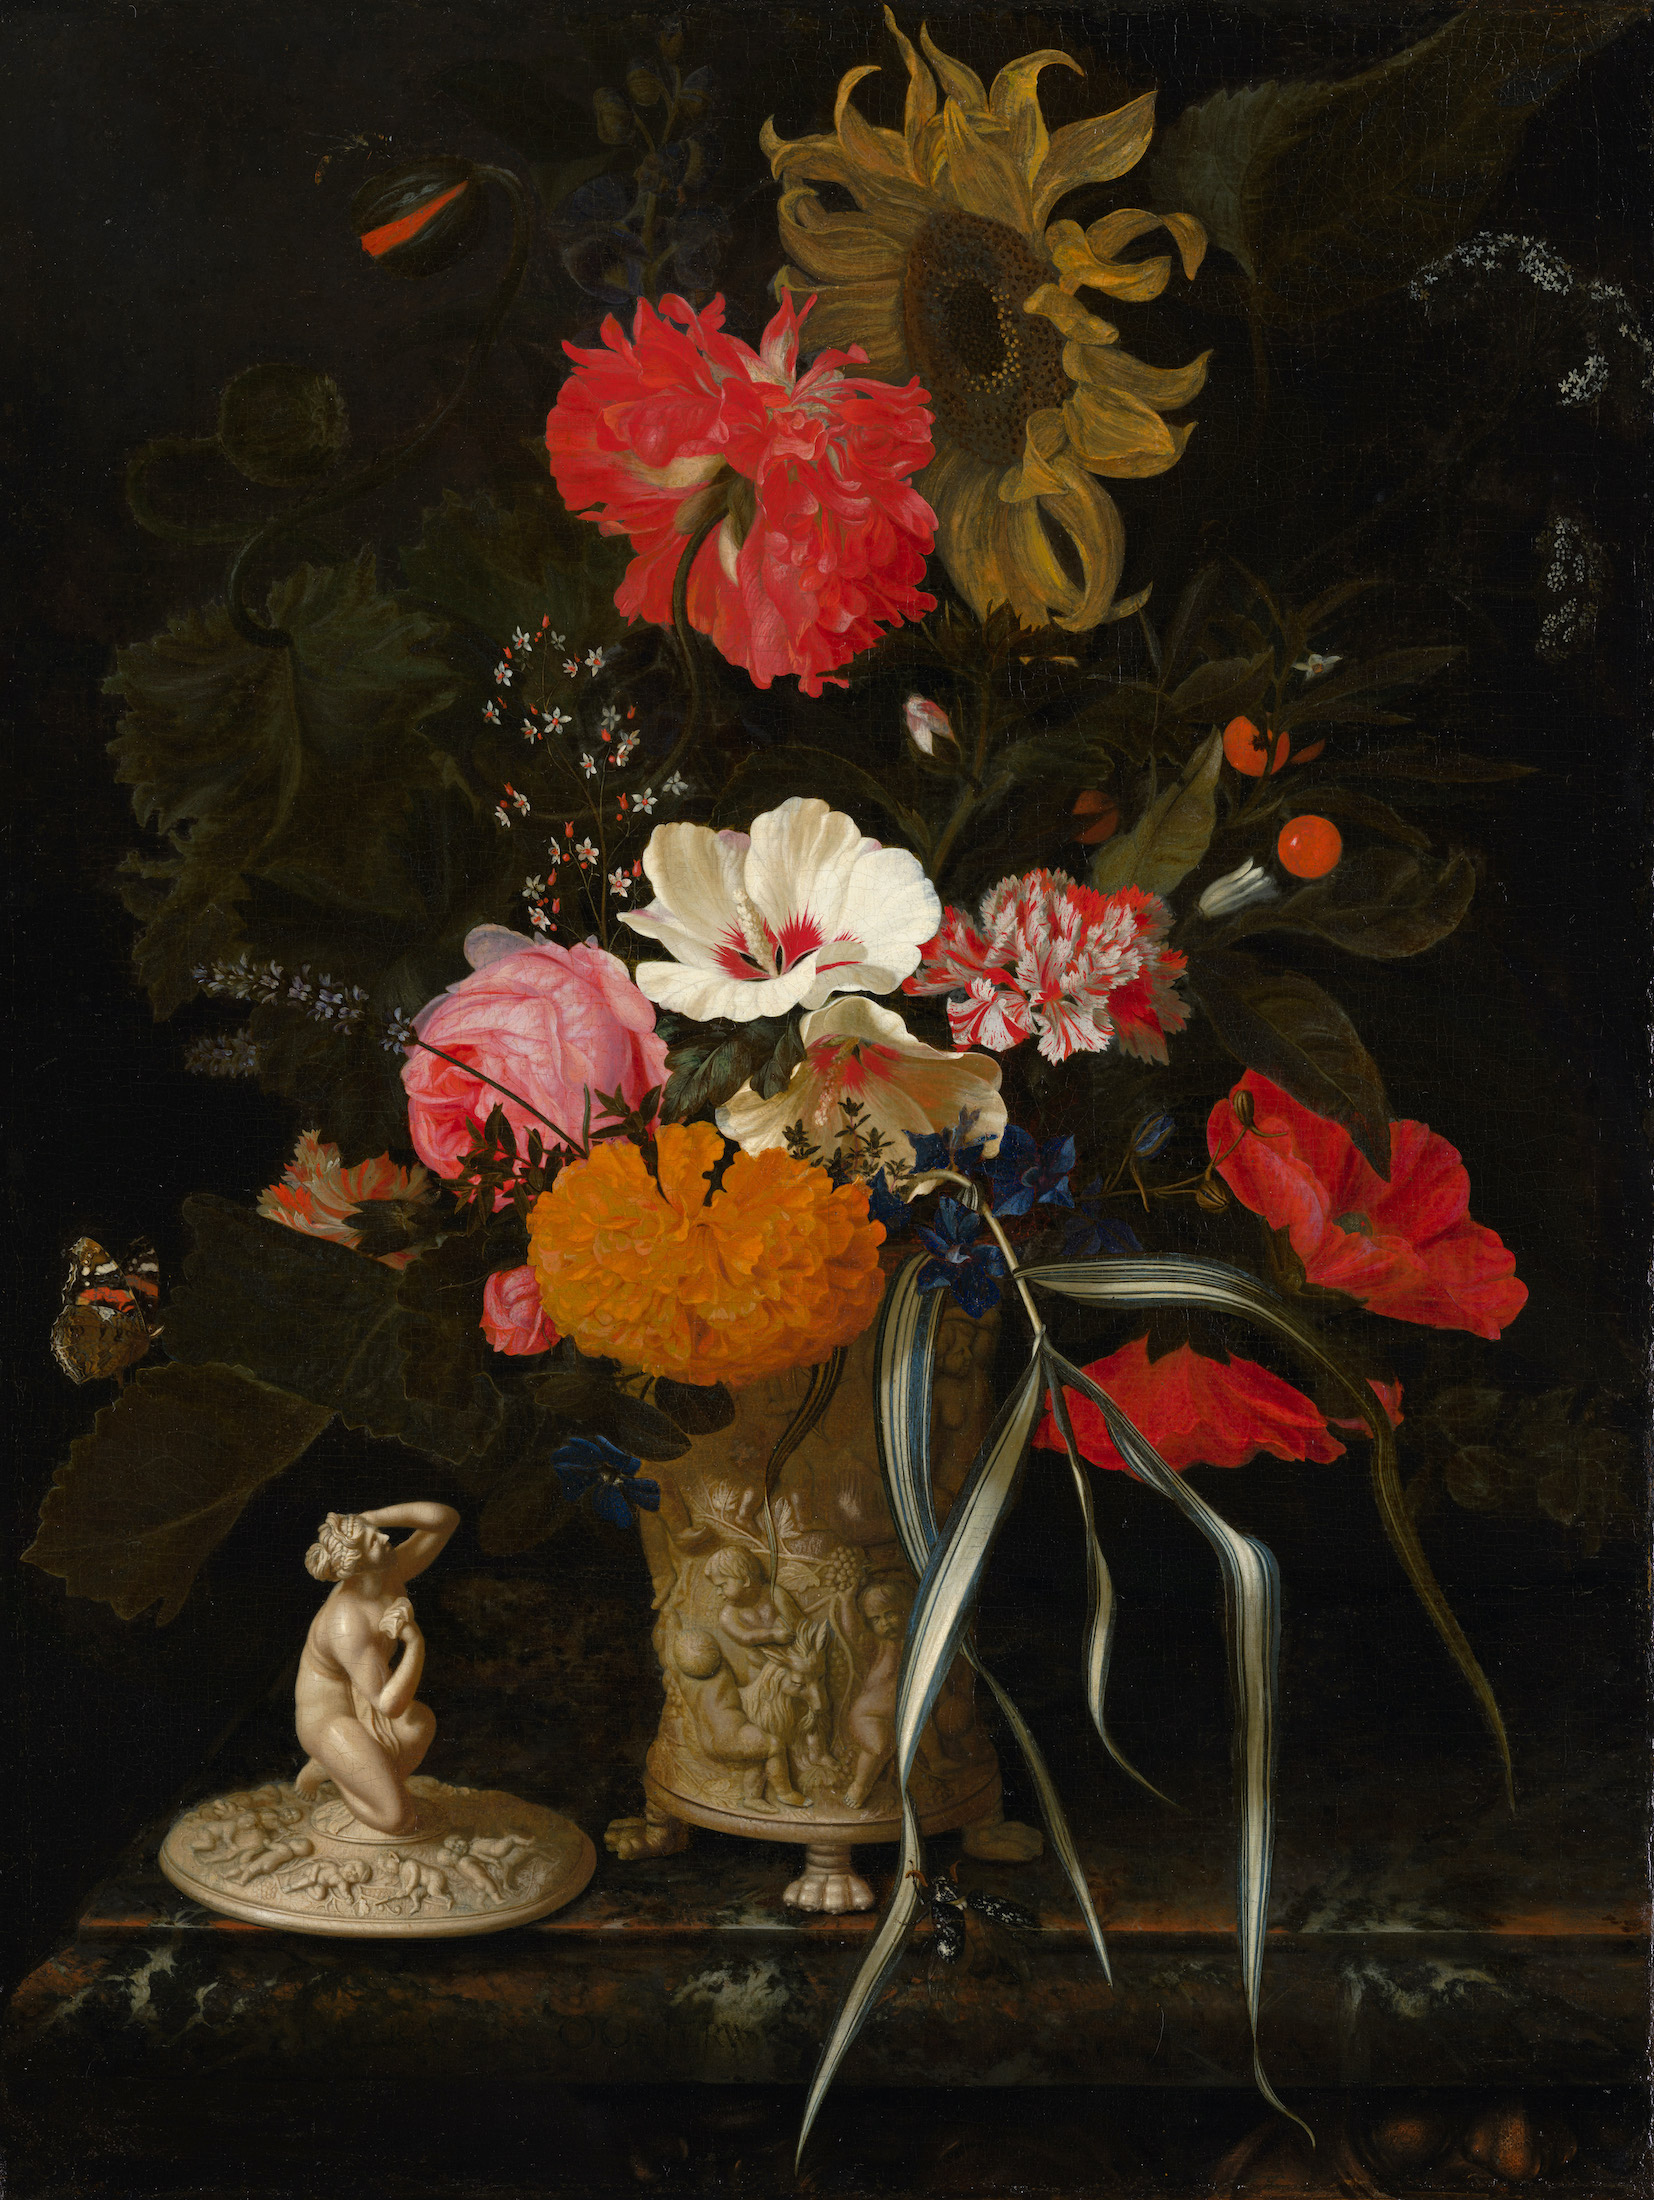 Flowers in an Ornamental Vase by Maria van Oosterwijck - c. 1670-1675? - 62 x 47.5 cm Mauritshuis, The Hague